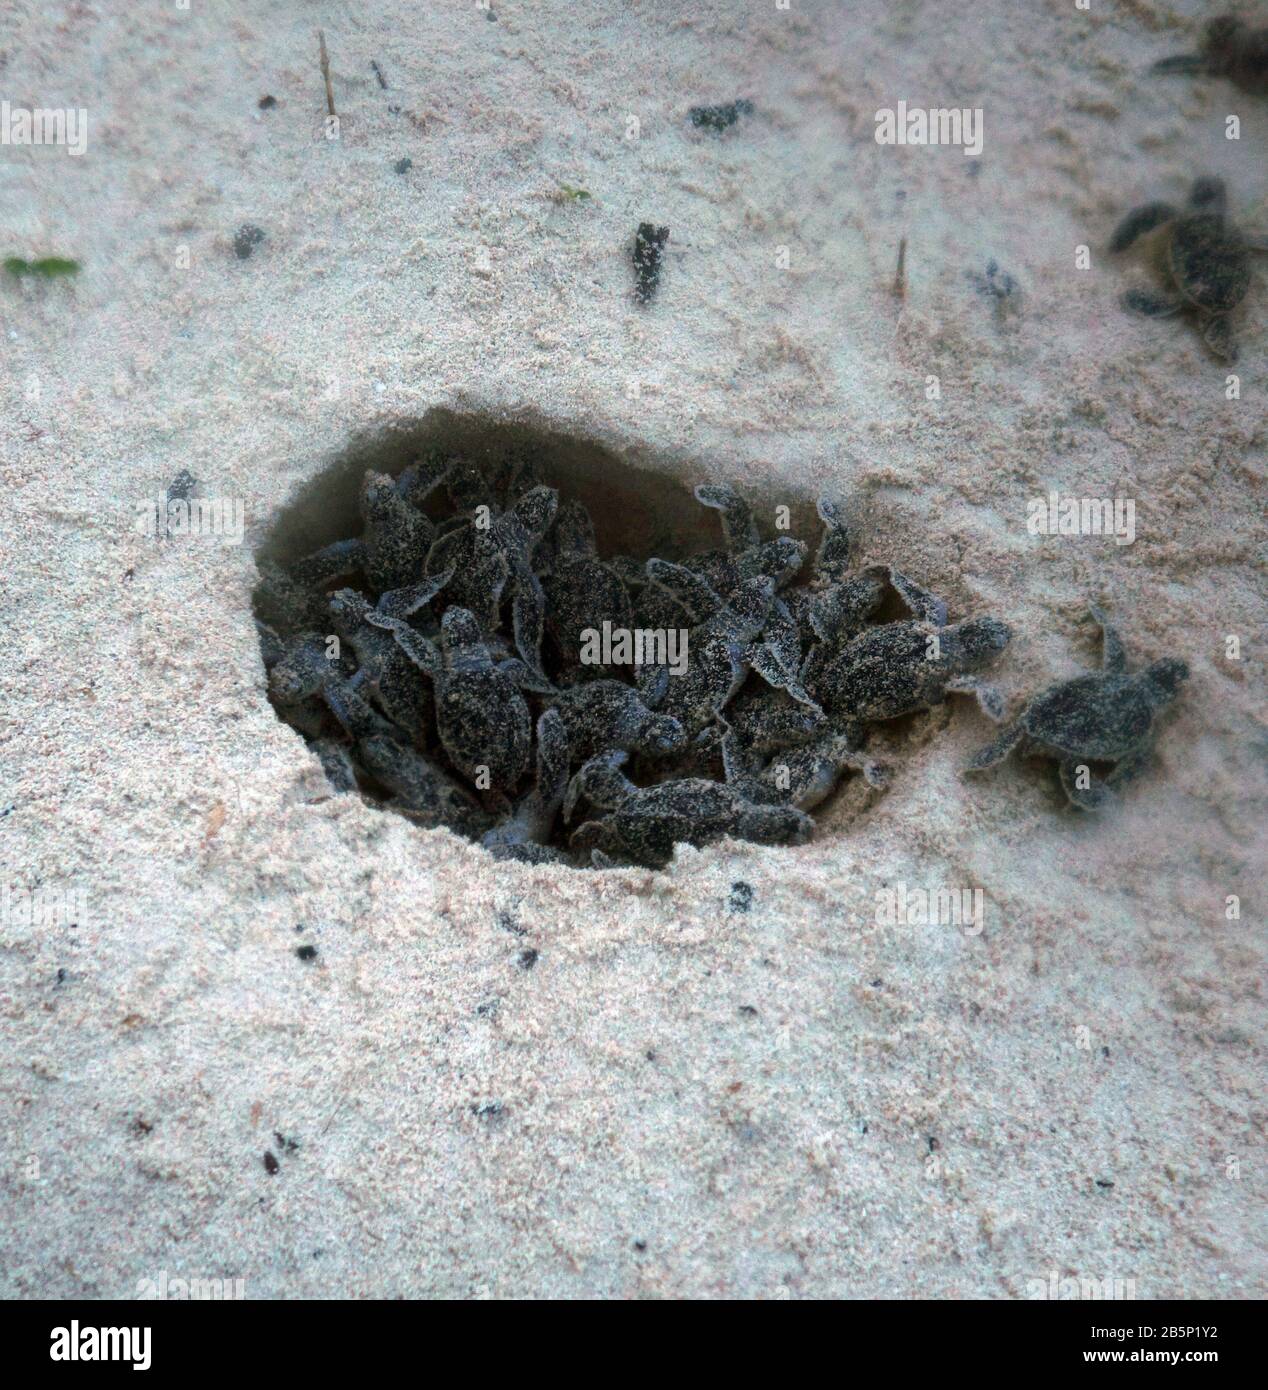 Des écloseries de tortues de mer vertes (Chelonia mydas) éclatent de leur nid à l'aube, île Heron, Groupe Capricorne Bunker, Grande barrière de corail, 8March2020. Banque D'Images